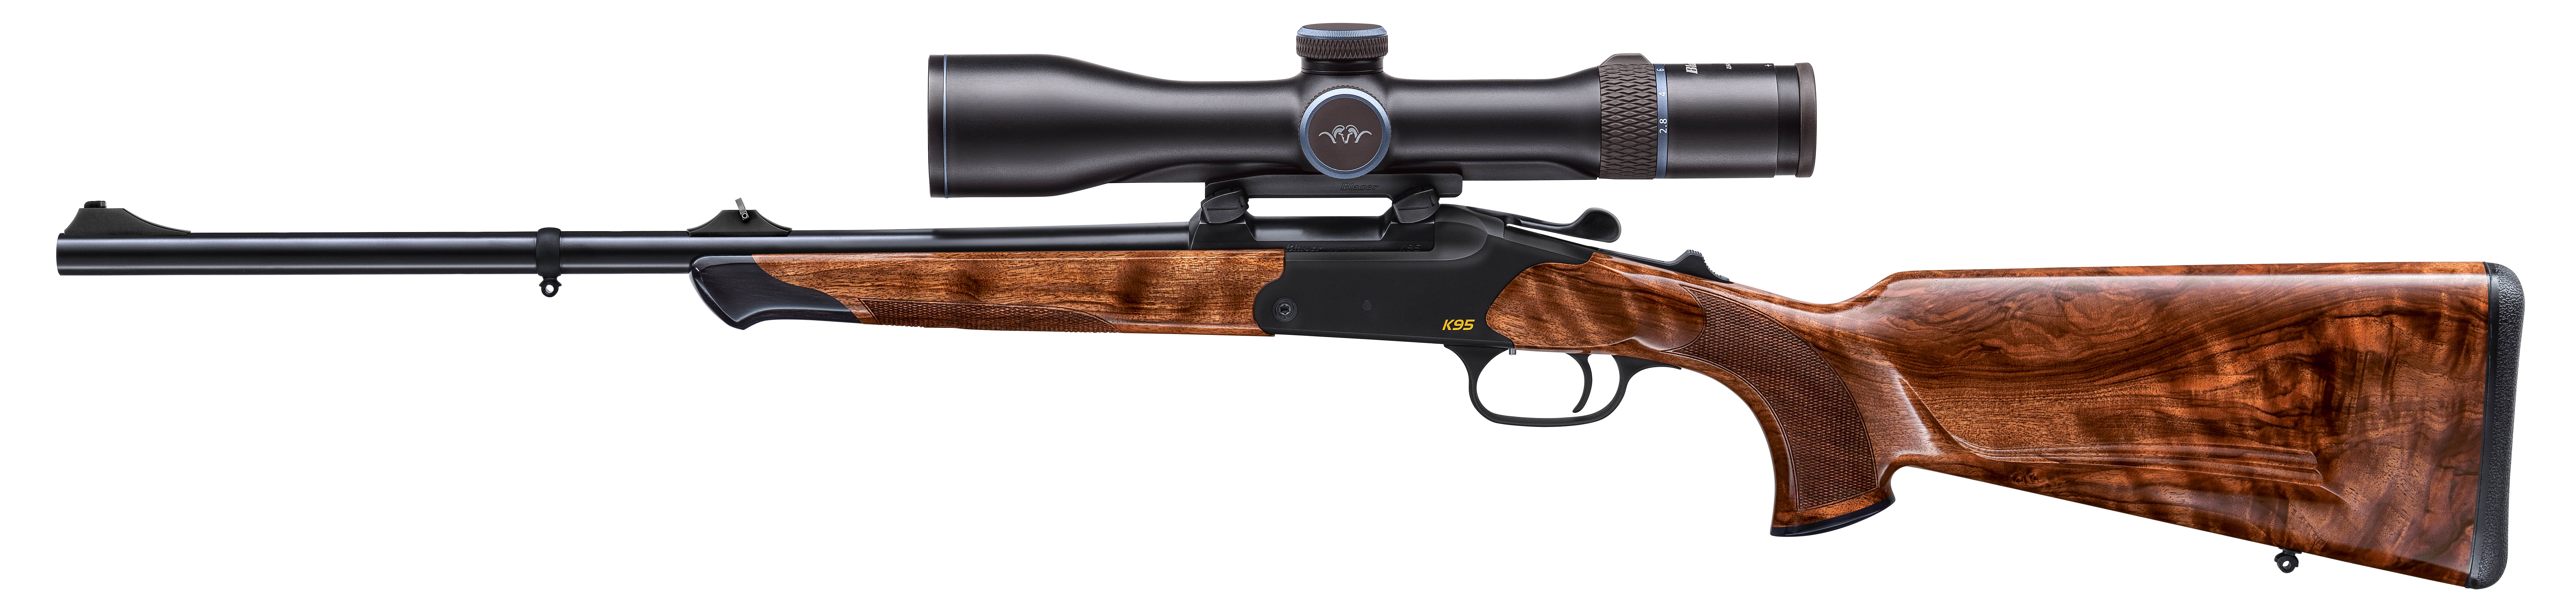 Blaser Single Shot Rifle K95